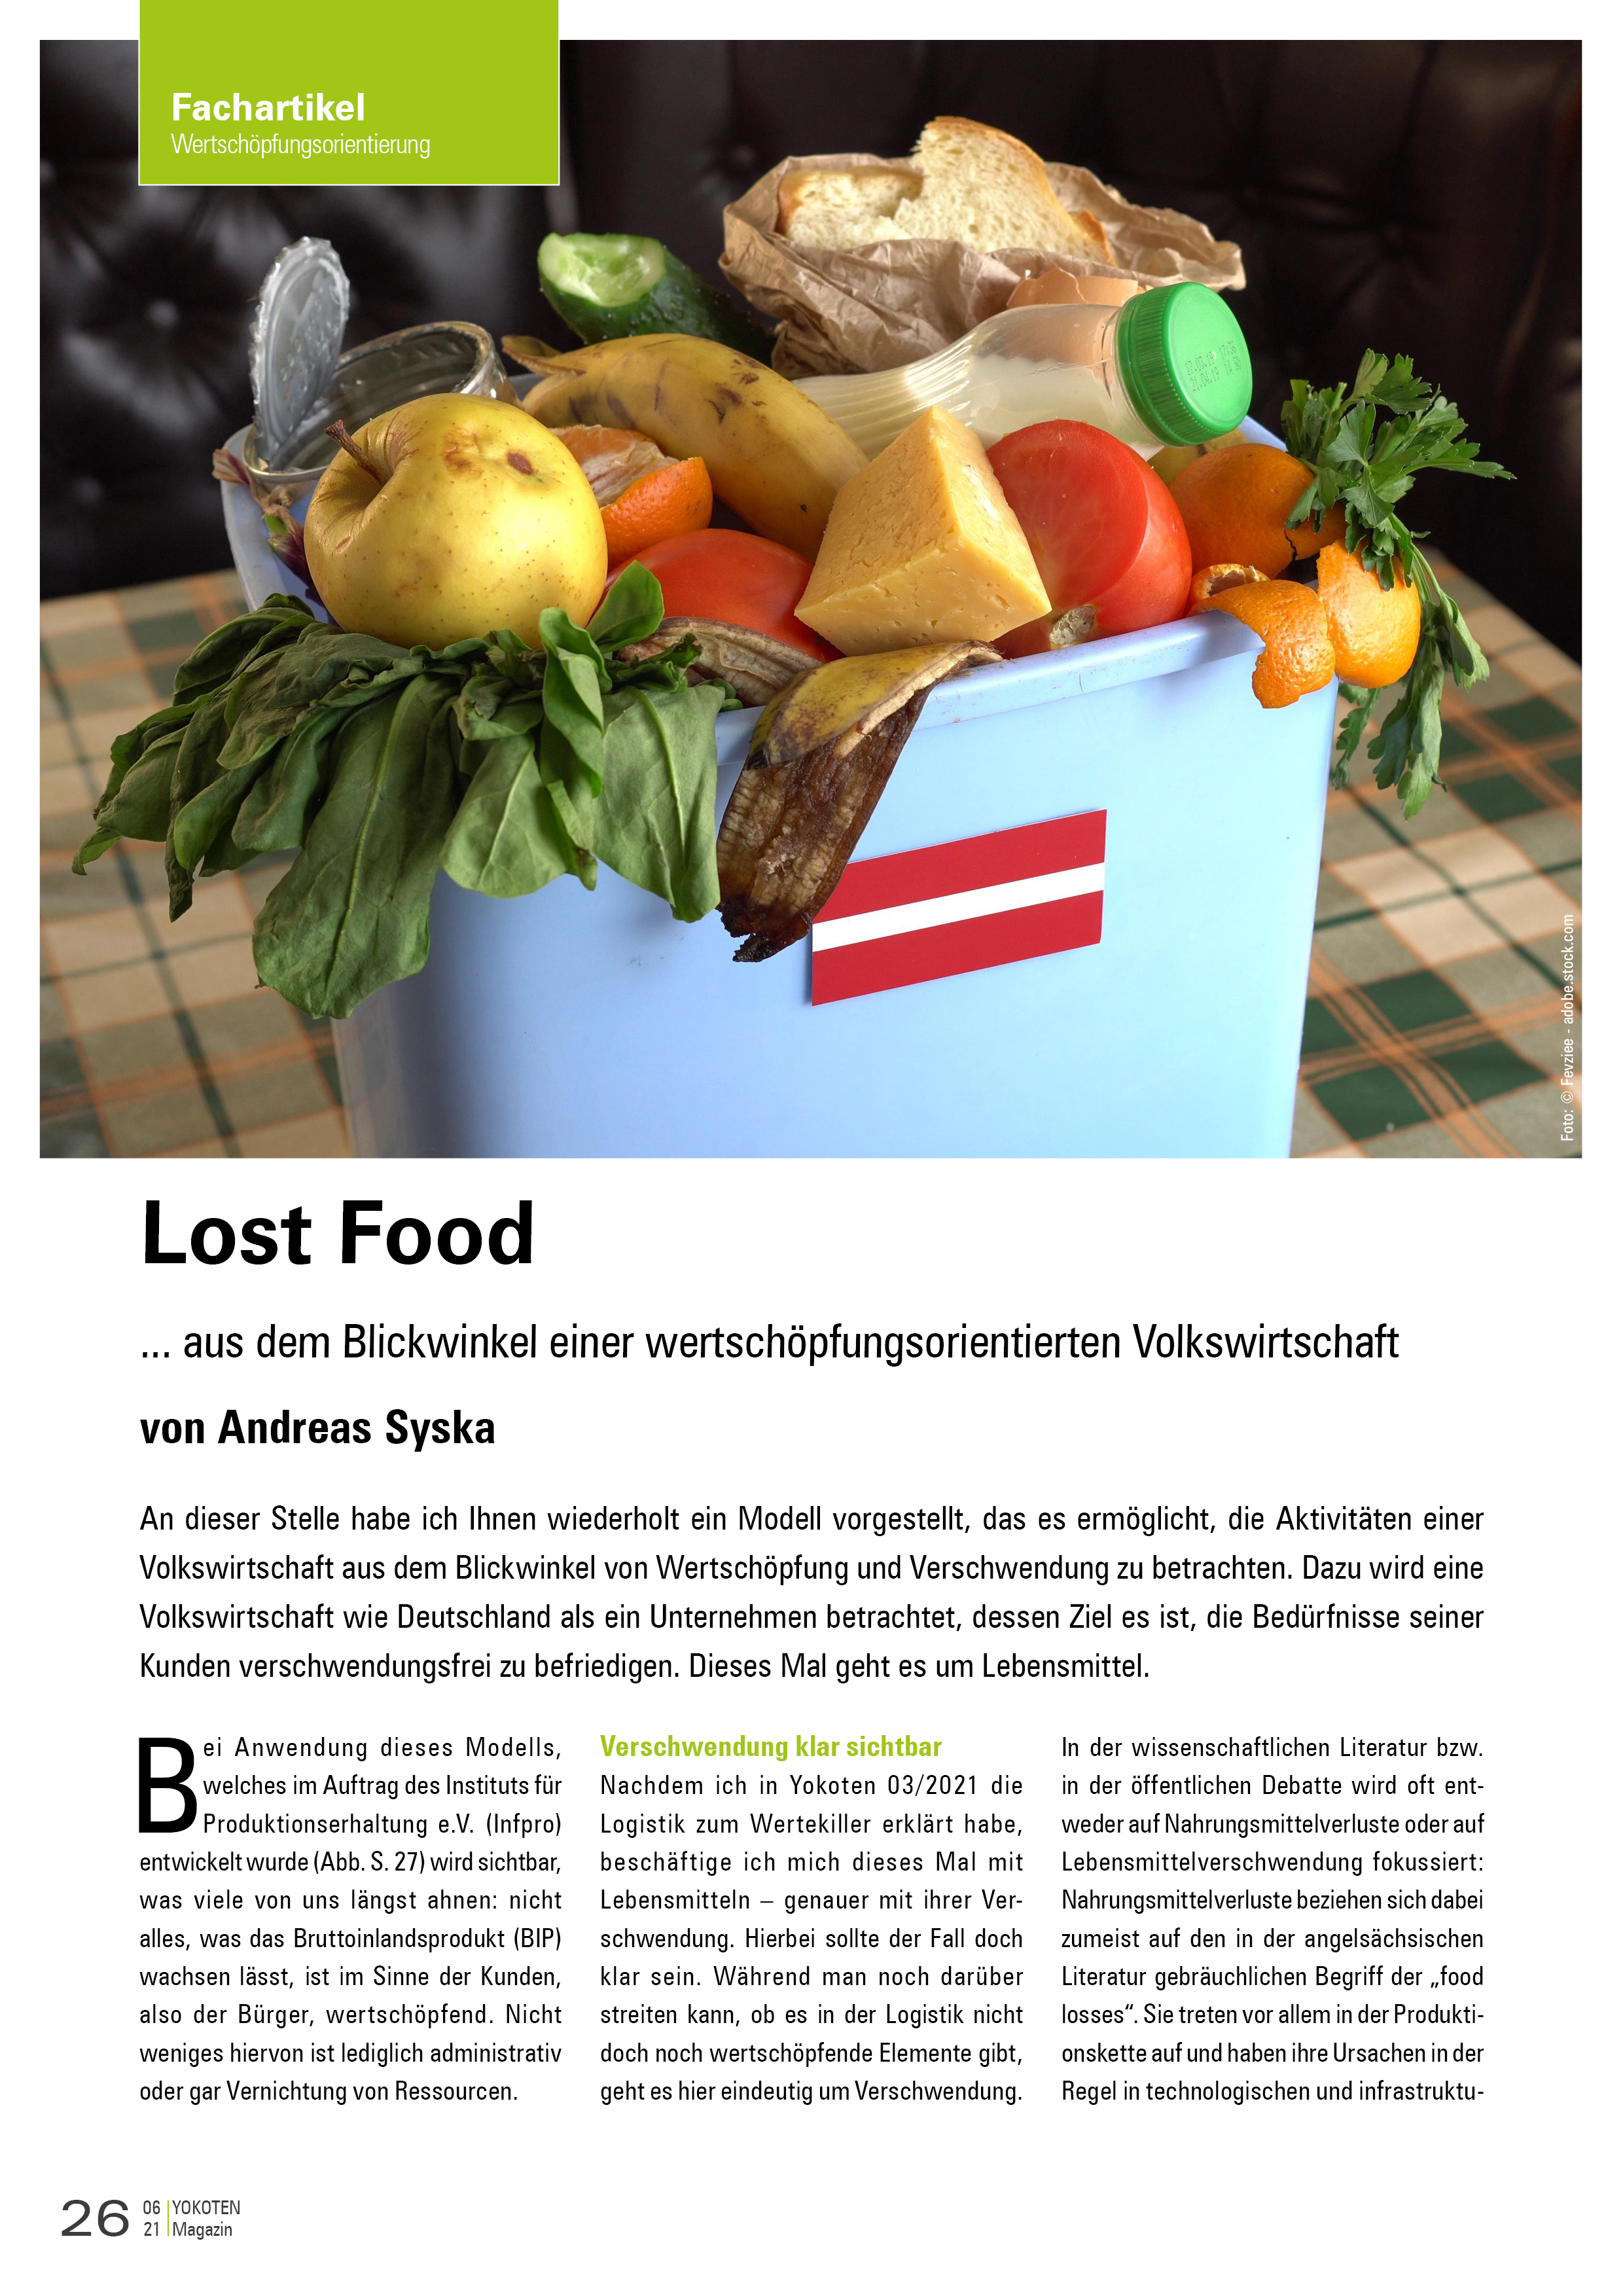 Lost Food - Artikel aus Fachmagazin YOKOTEN 2021-06